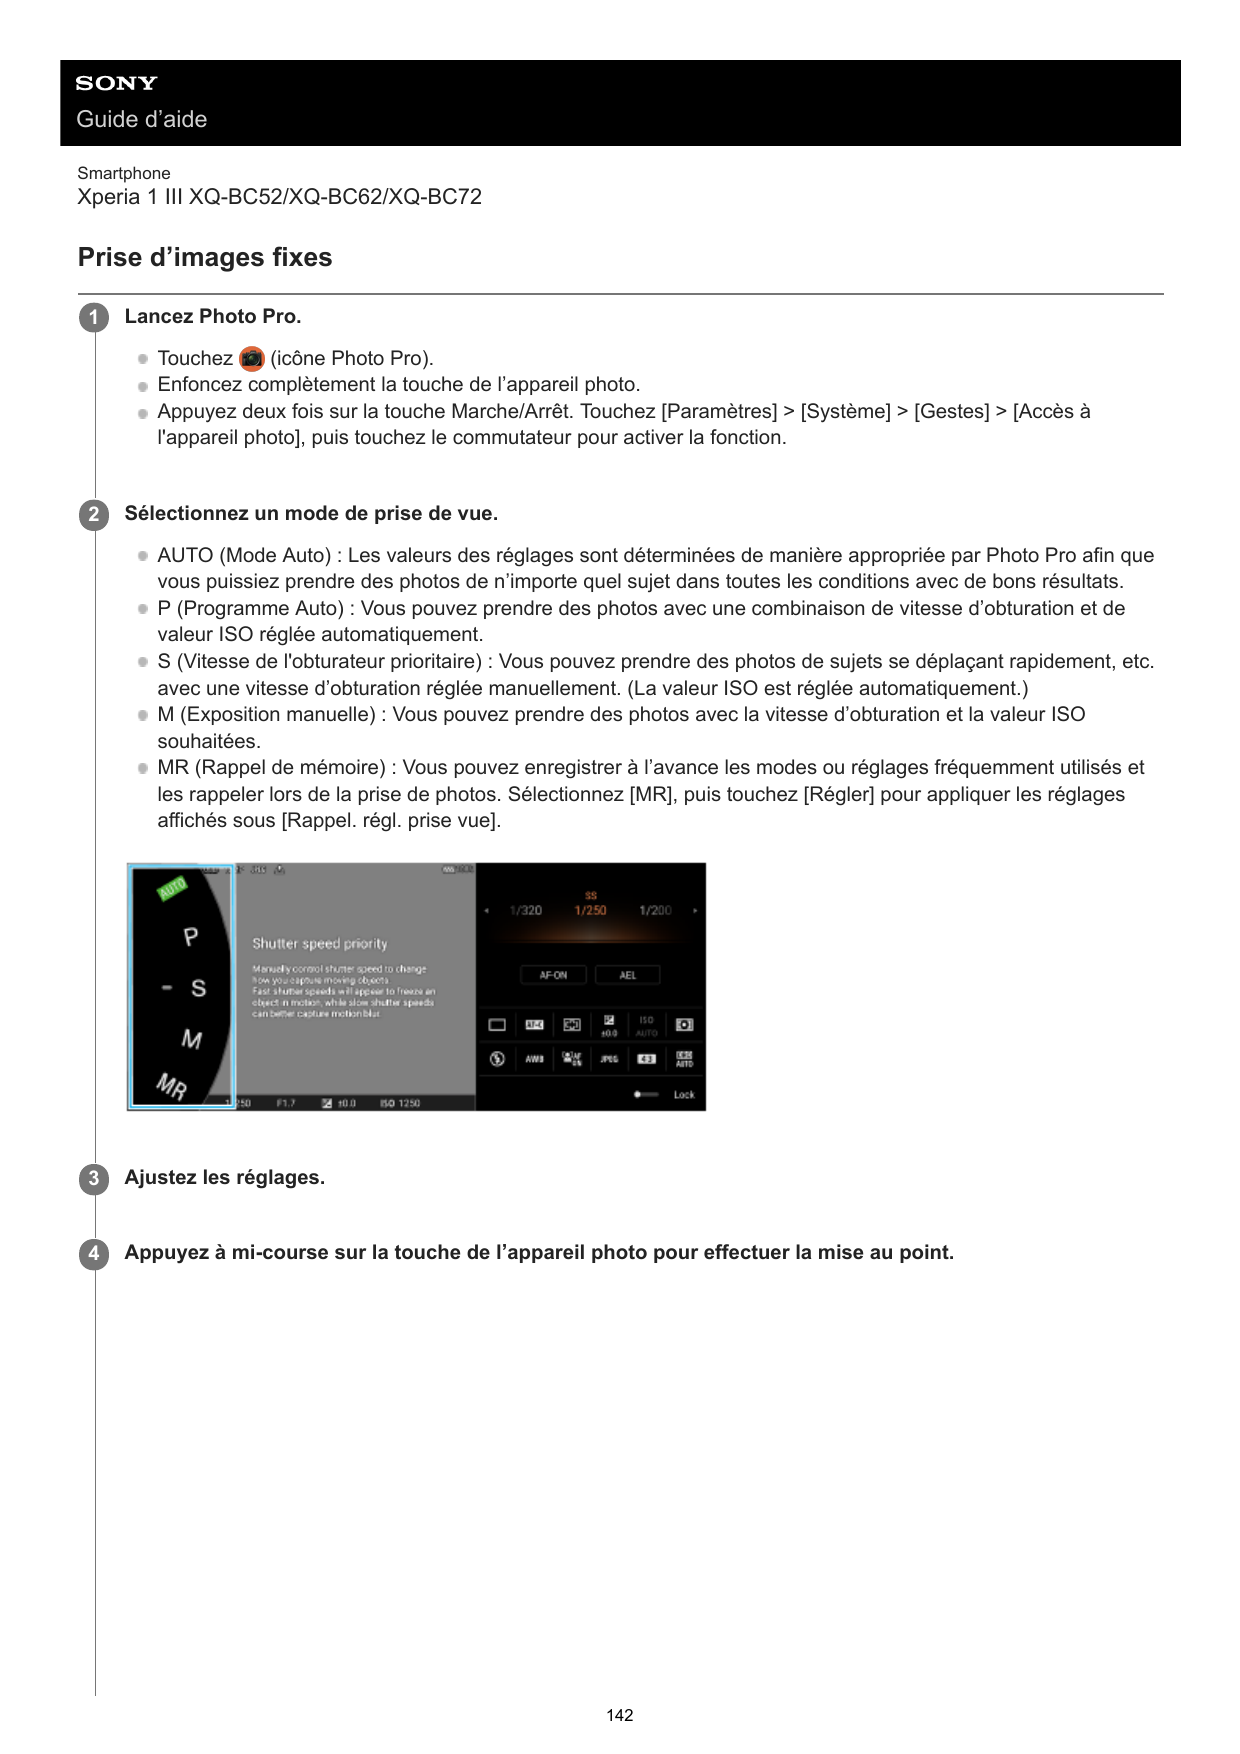 Guide d’aideSmartphoneXperia 1 III XQ-BC52/XQ-BC62/XQ-BC72Prise d’images fixes1Lancez Photo Pro.Touchez(icône Photo Pro).Enfonce